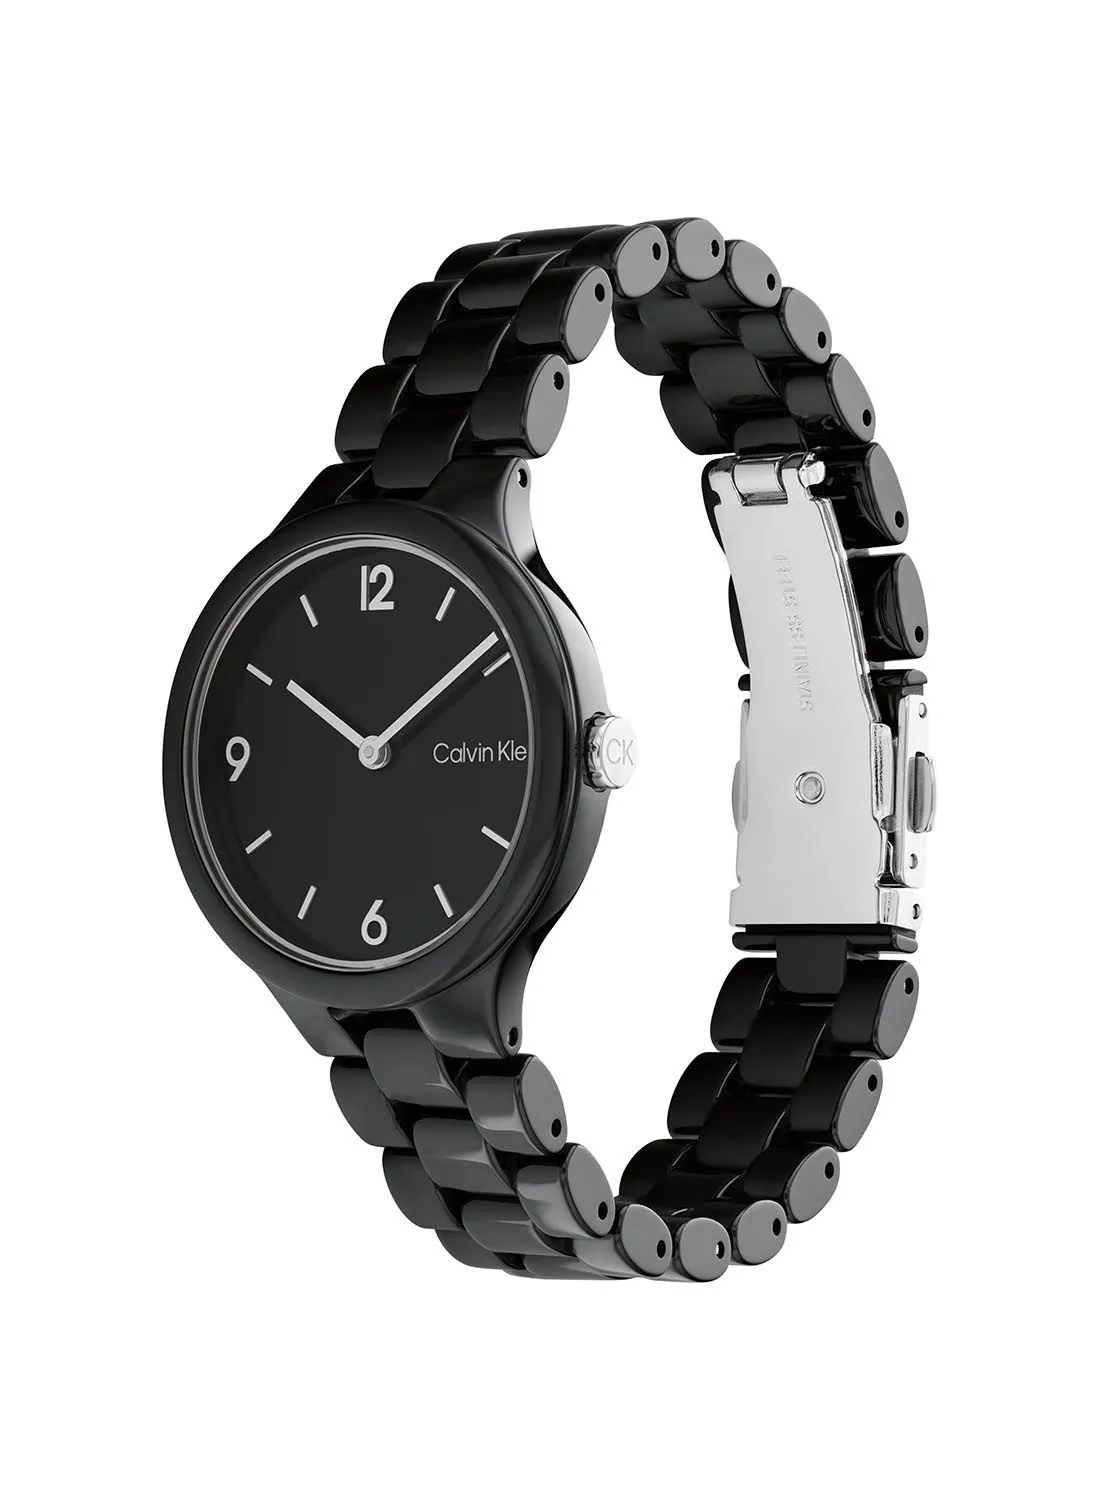 CALVIN KLEIN Women's Analog Round Waterproof  Wrist Watch With Ceramic Strap 25200078